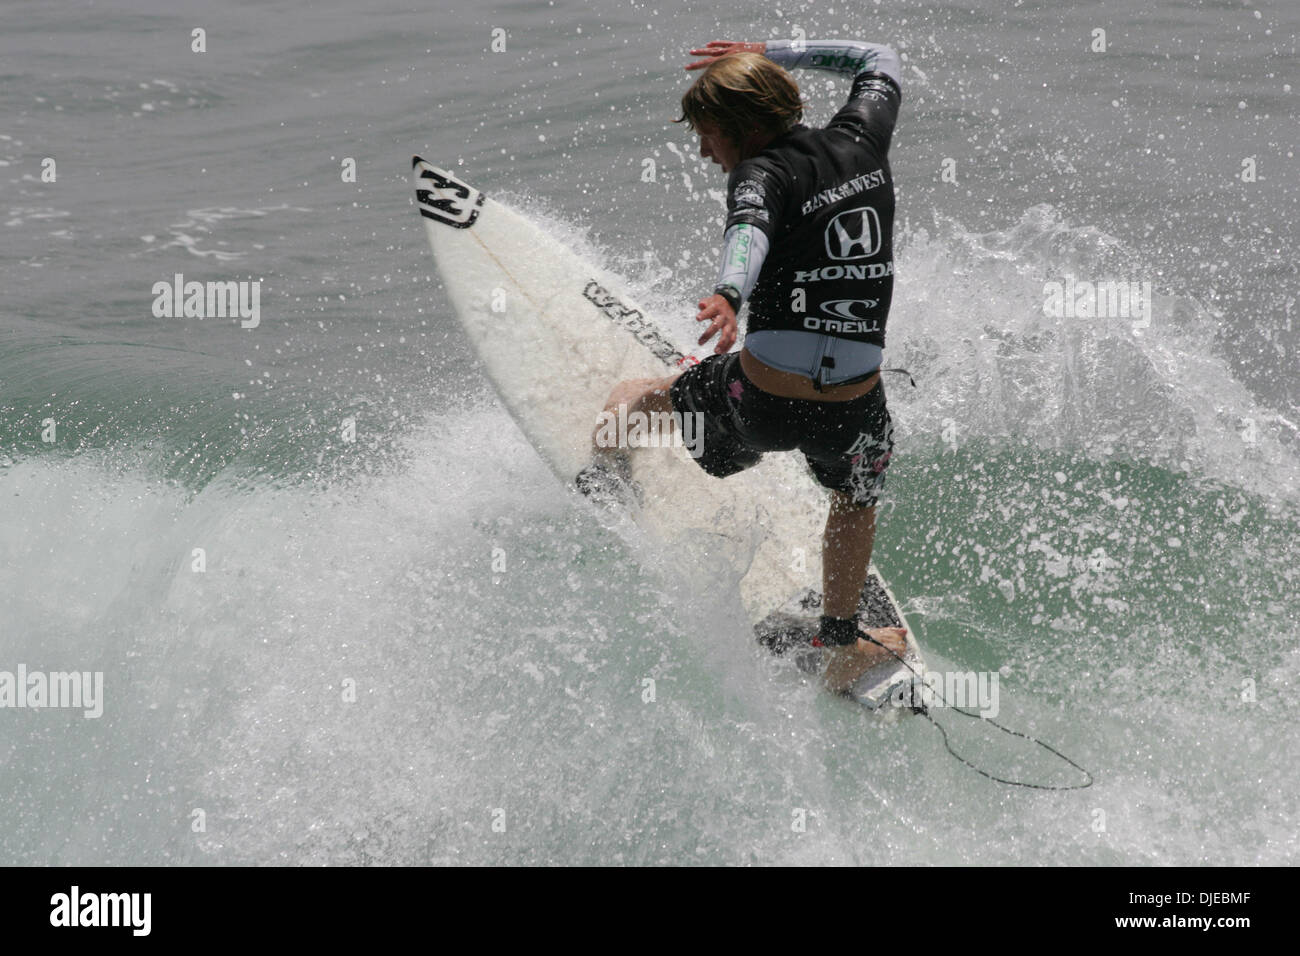 Aug 01, 2004; Huntington Beach, CA, Stati Uniti d'America; Australian surfer TAJ BURROW le catture di una onda con stile e vince la HONDA US Open 2004 campionati di surf a Huntington Beach. Foto Stock